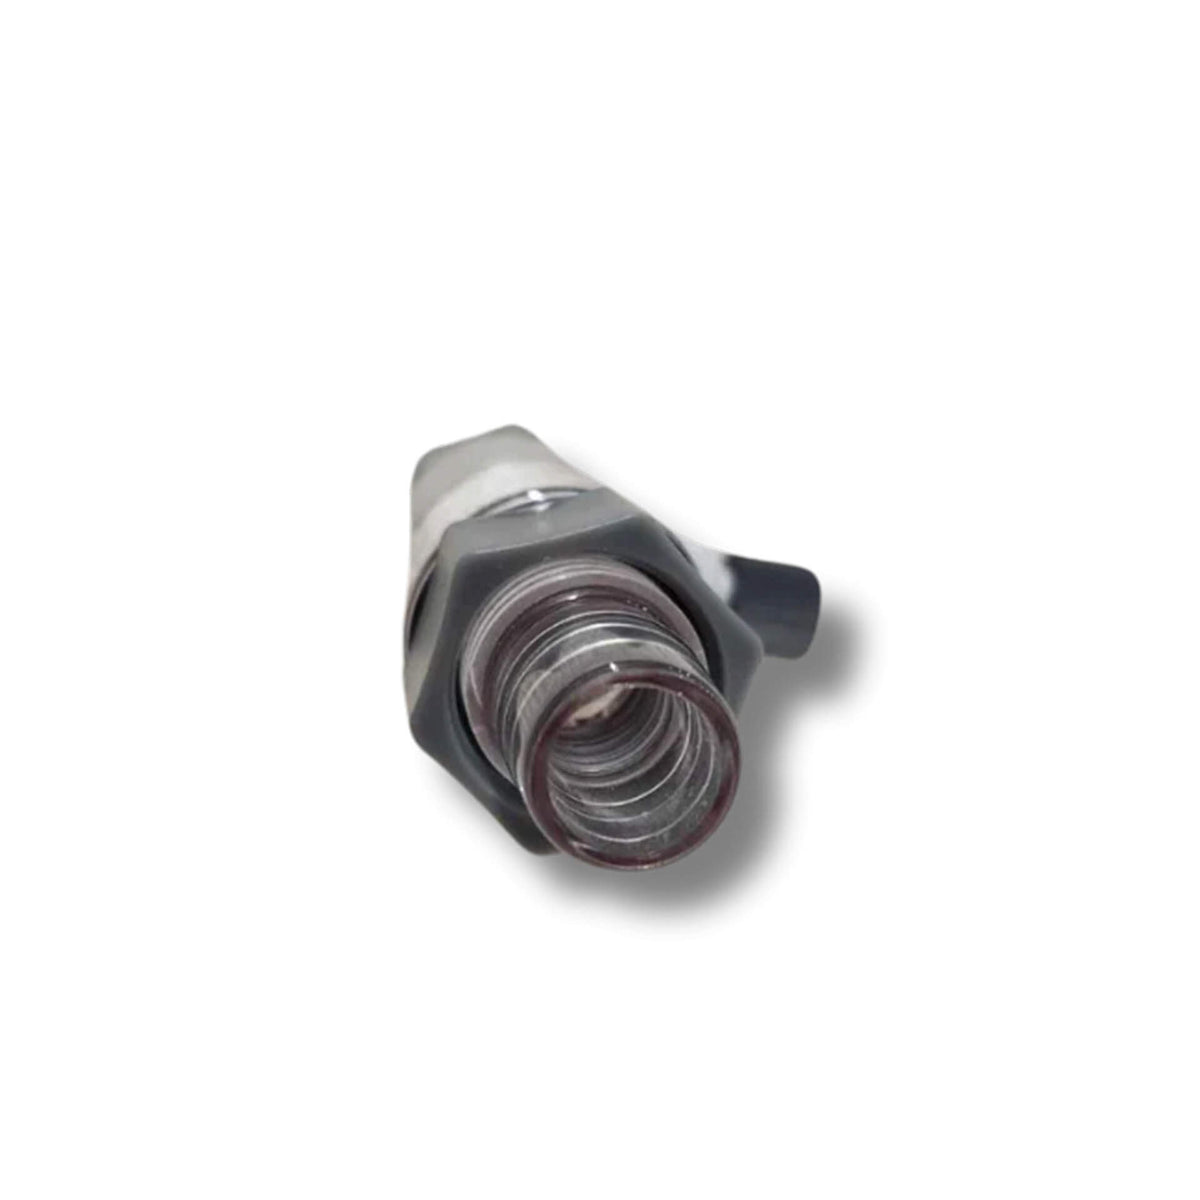 Dalua - CO2 Inline Diffuser 12/16mm